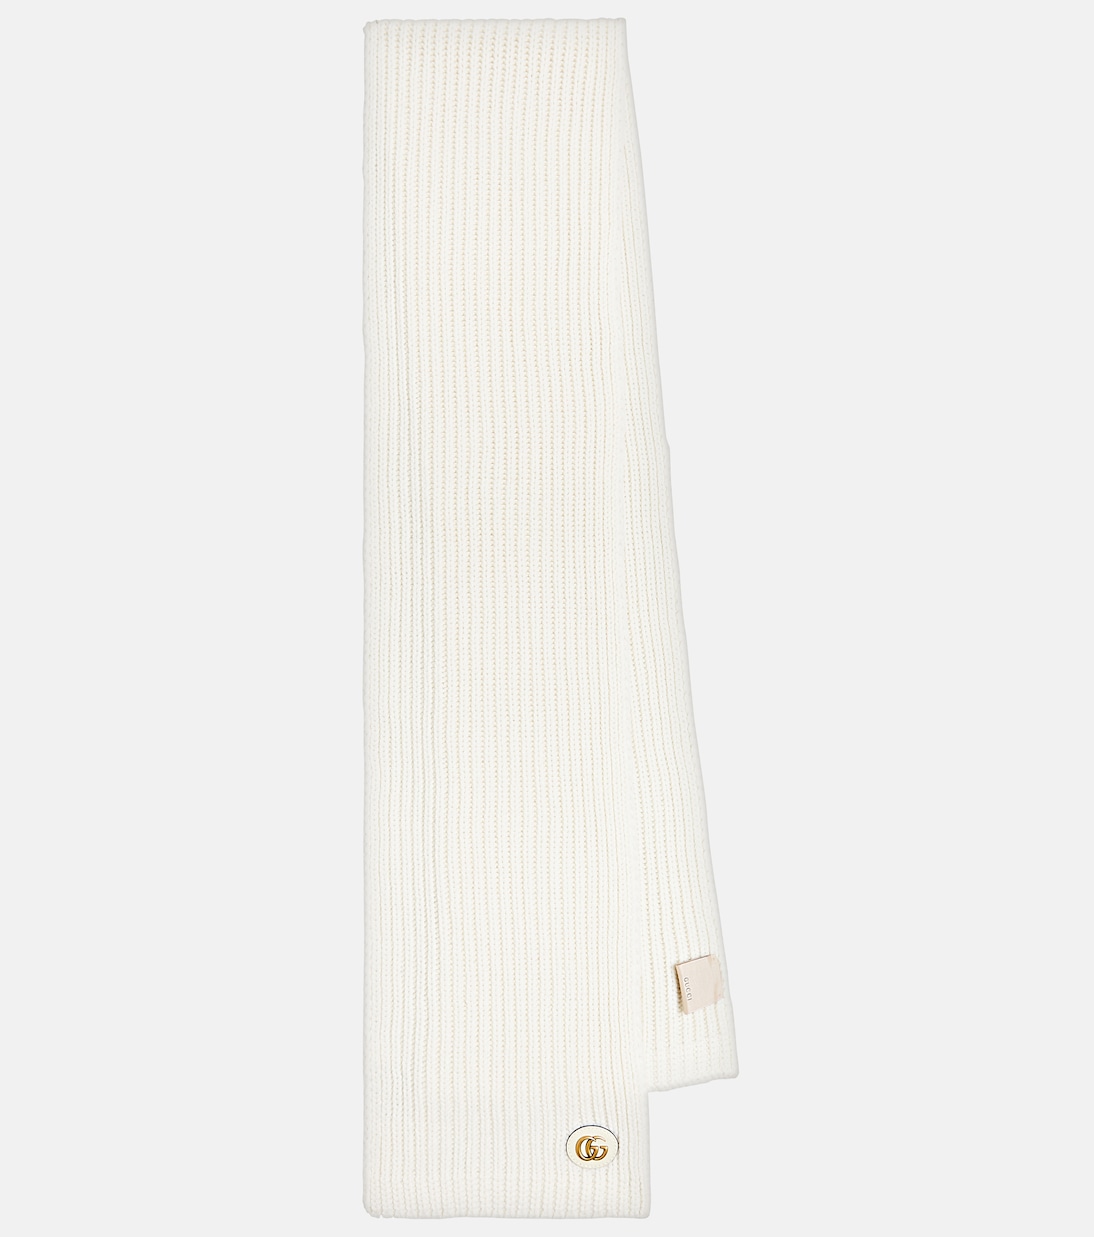 Шарф из шерсти и кашемира Gucci, белый шарф из кашемира и шерсти гладкой вязки цвет – белый